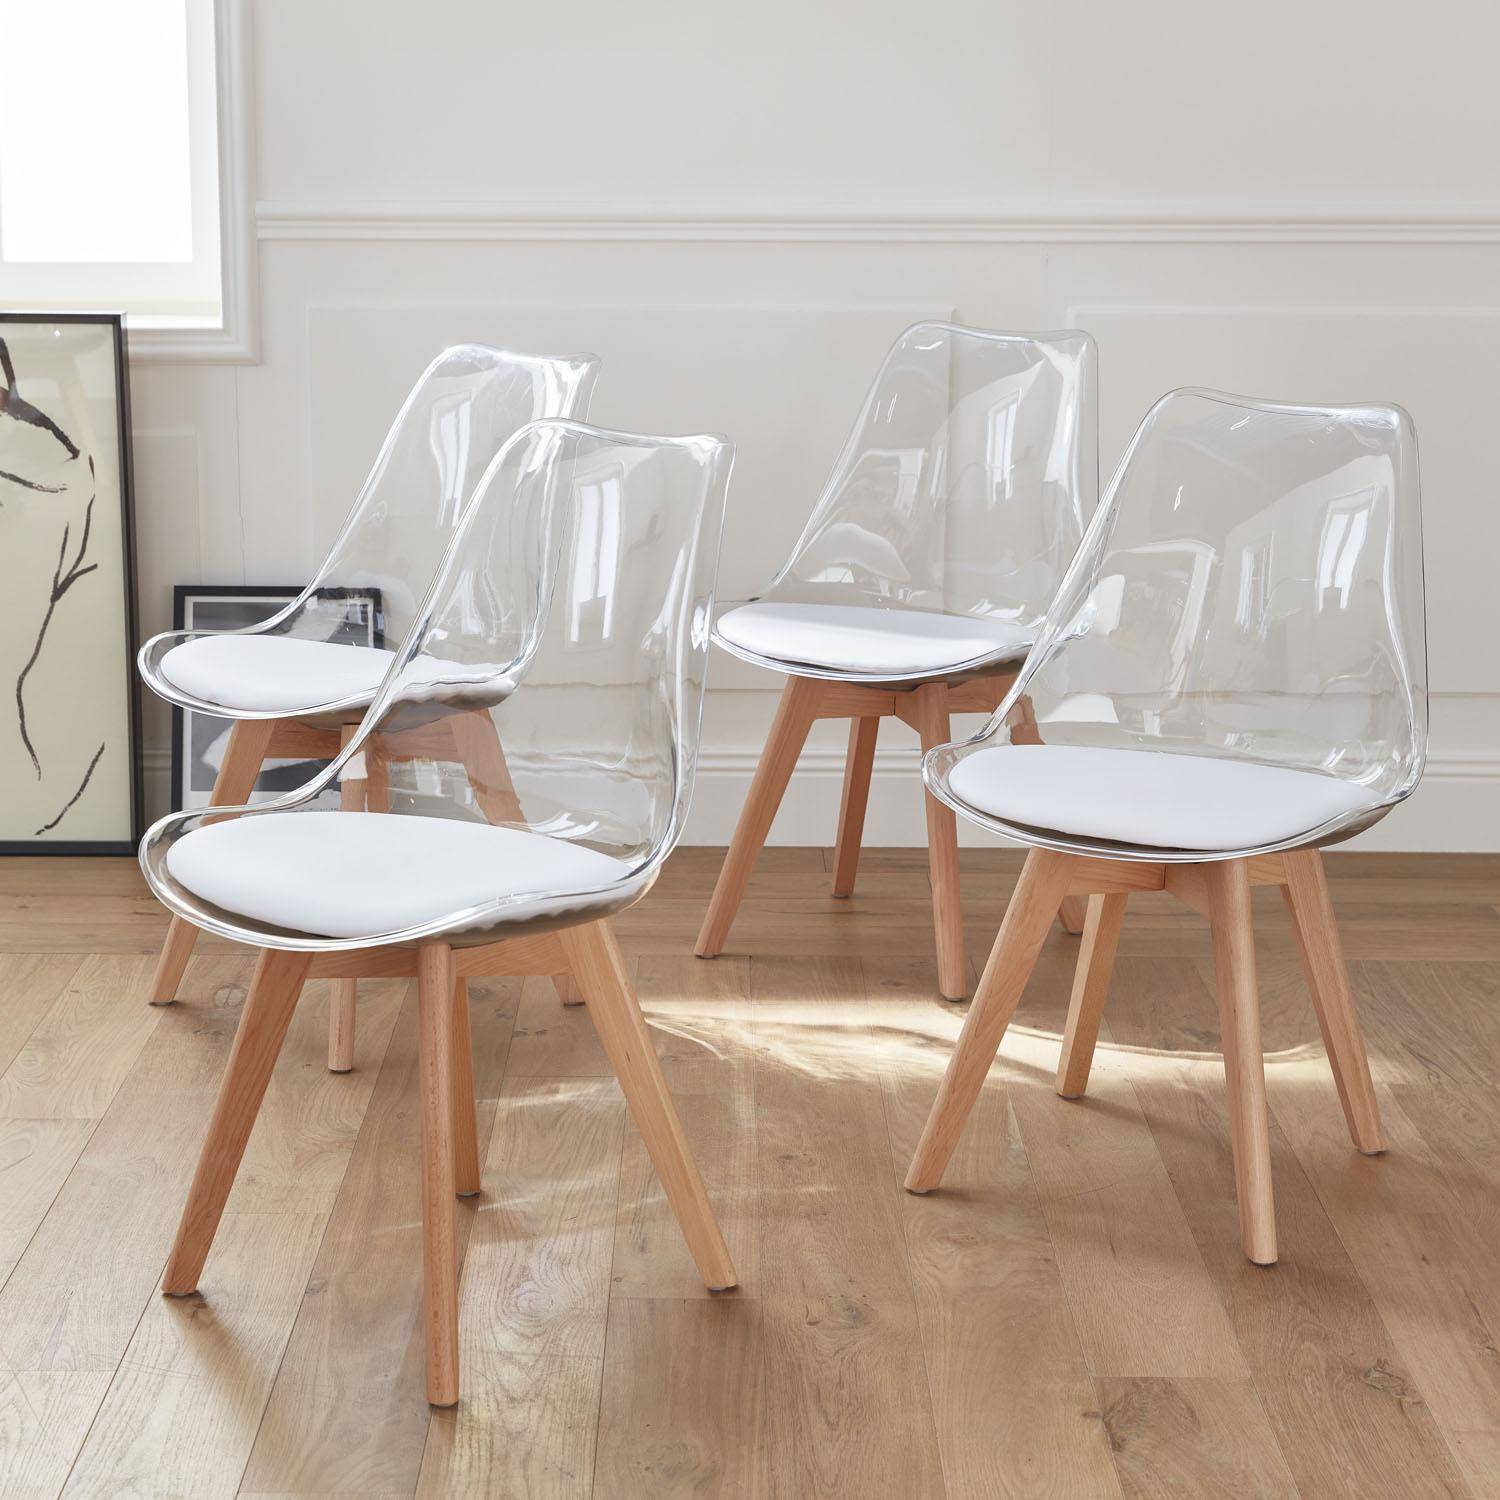 Juego de 4 sillas escandinavas - Lagertha - patas de madera, asientos individuales, cojín blanco, carcasa transparente  Photo2